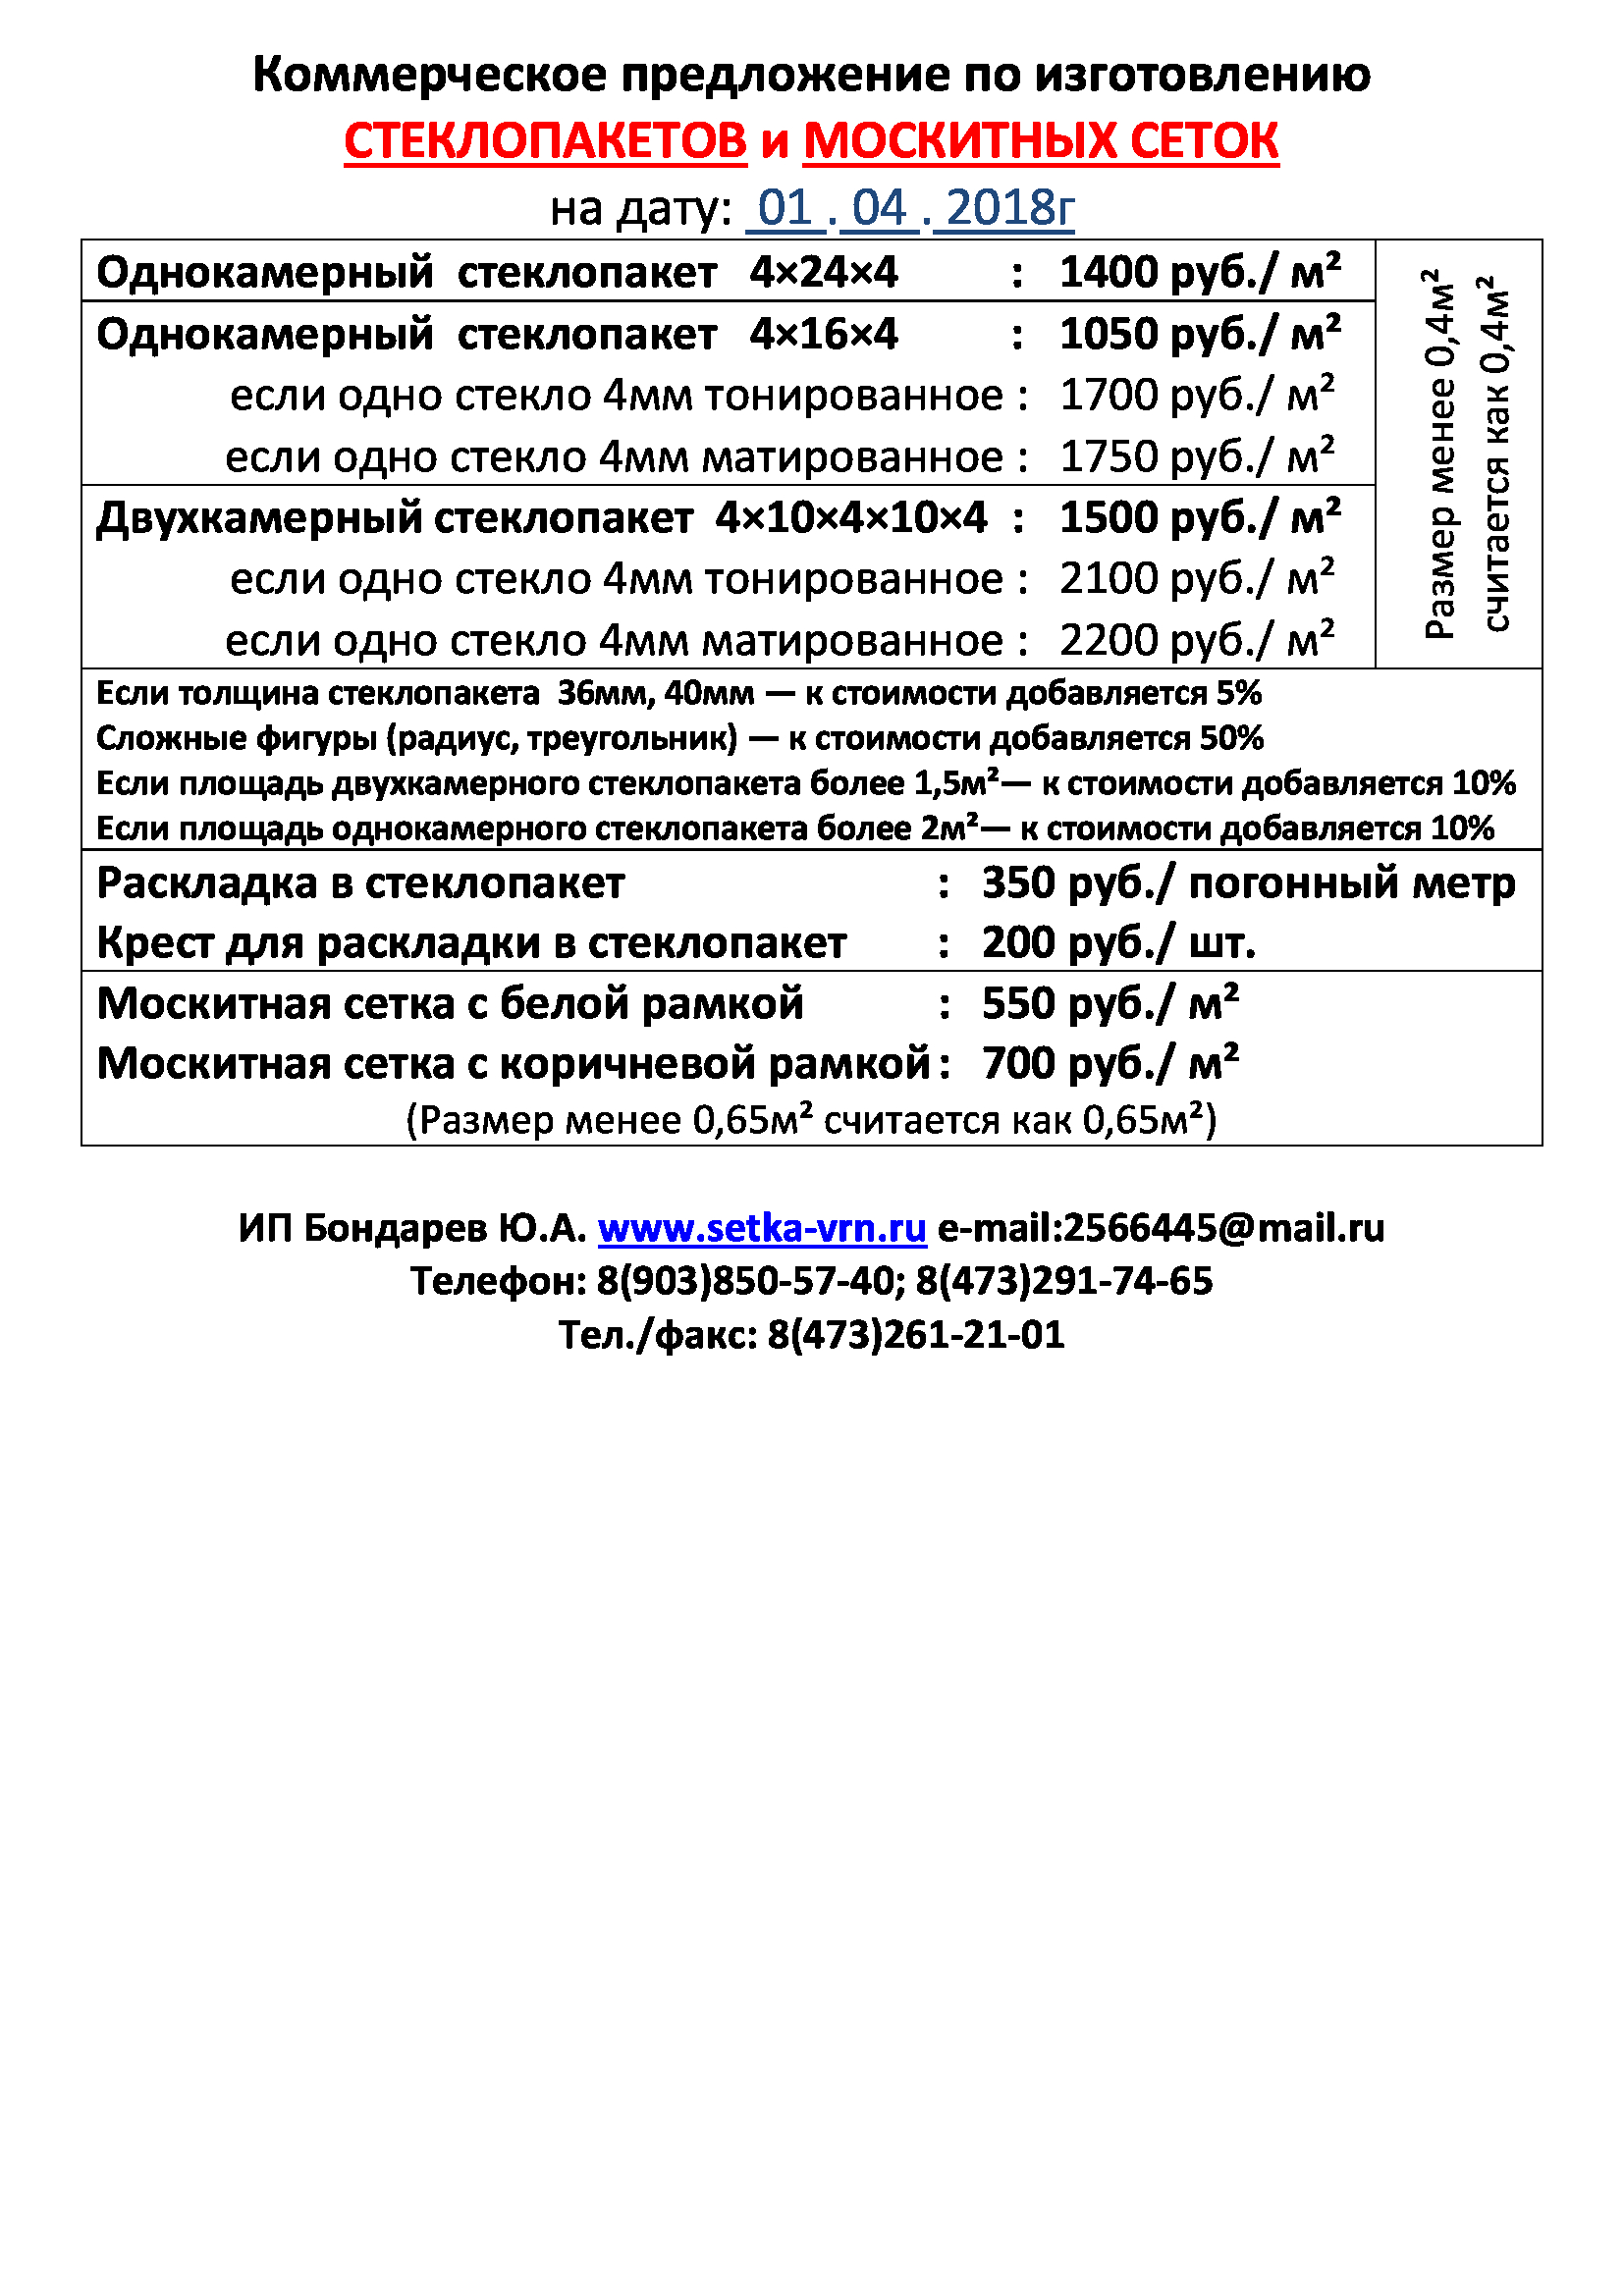 Цены на стеклопакеты в Воронеже